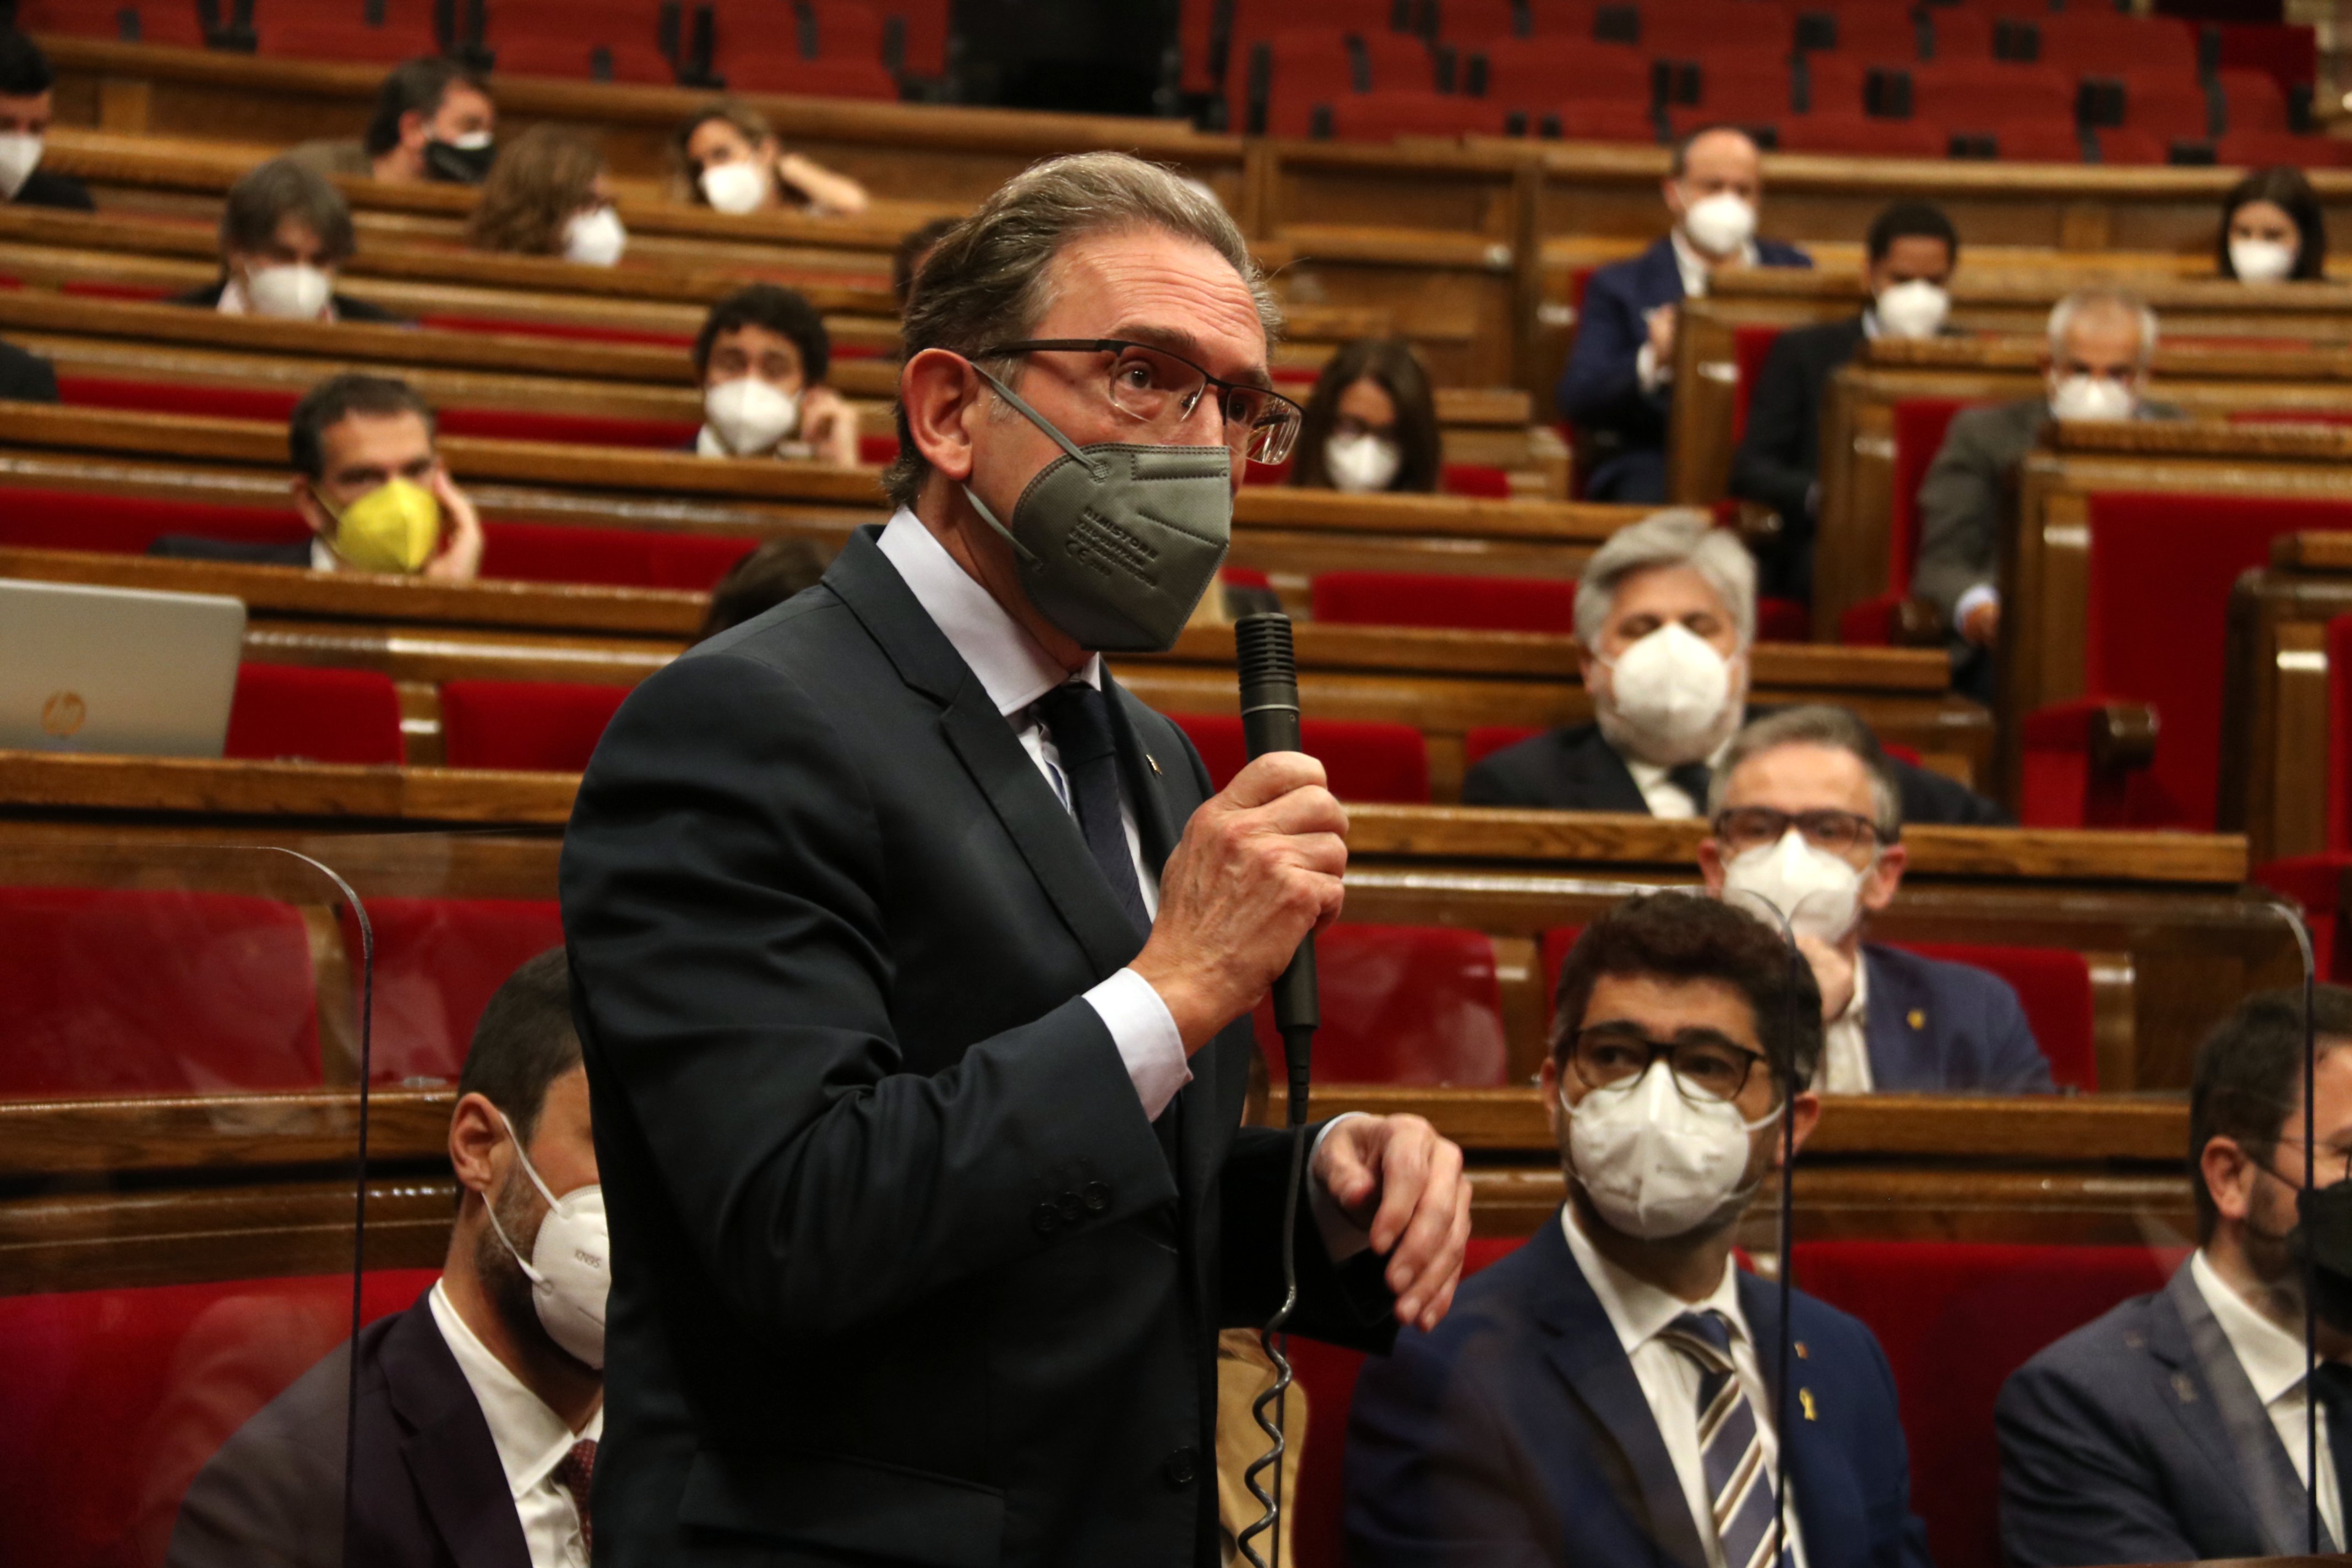 Giró se estrena en el Parlament con un tenso cara a cara con Gallego